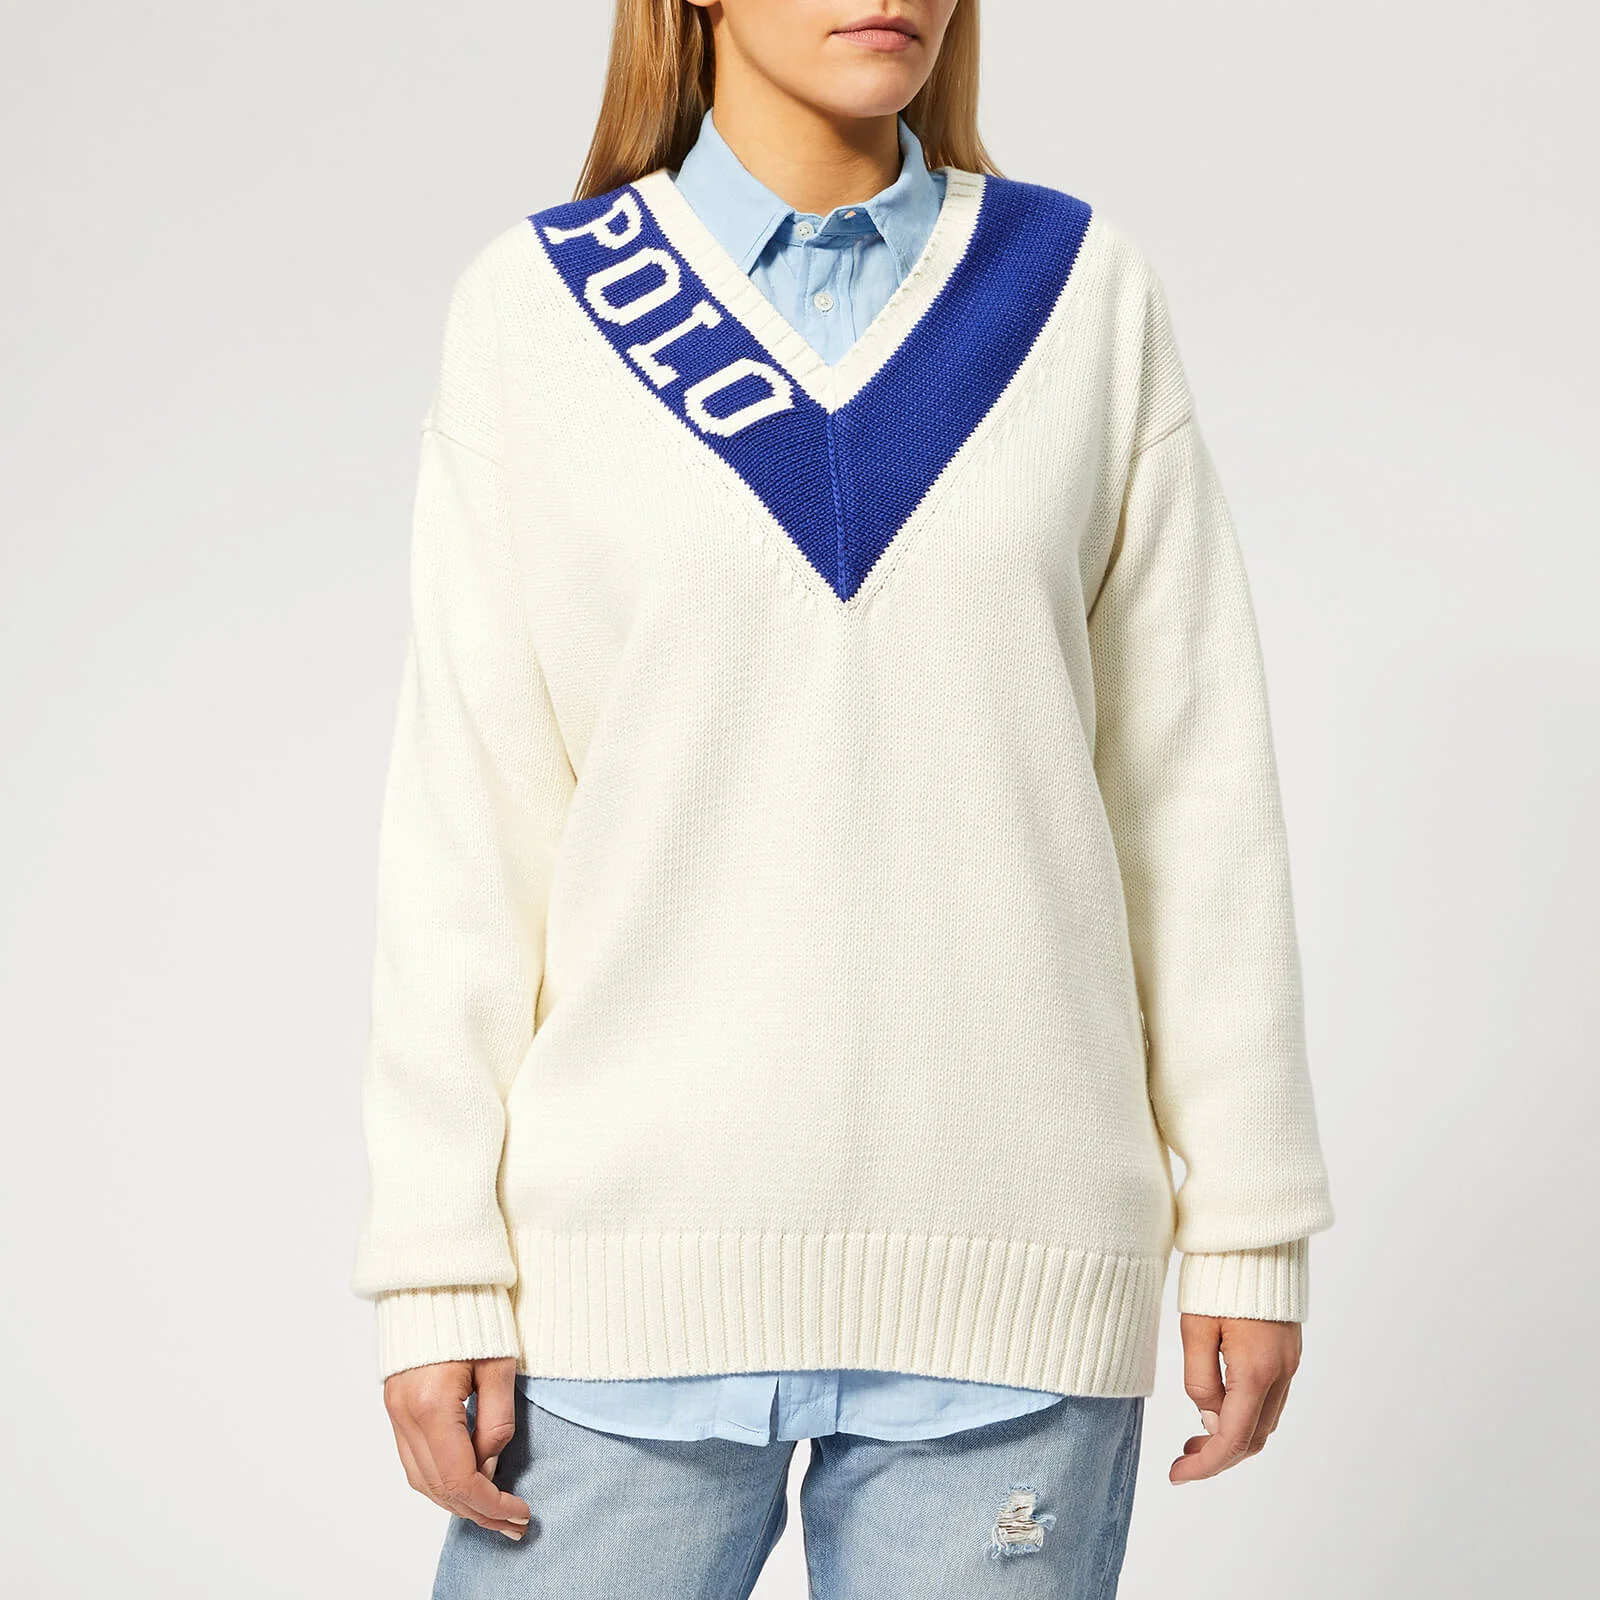 Polo Ralph Lauren Women's Long Sleeve V Neck Sweater - Light Cream/Royal Image 1